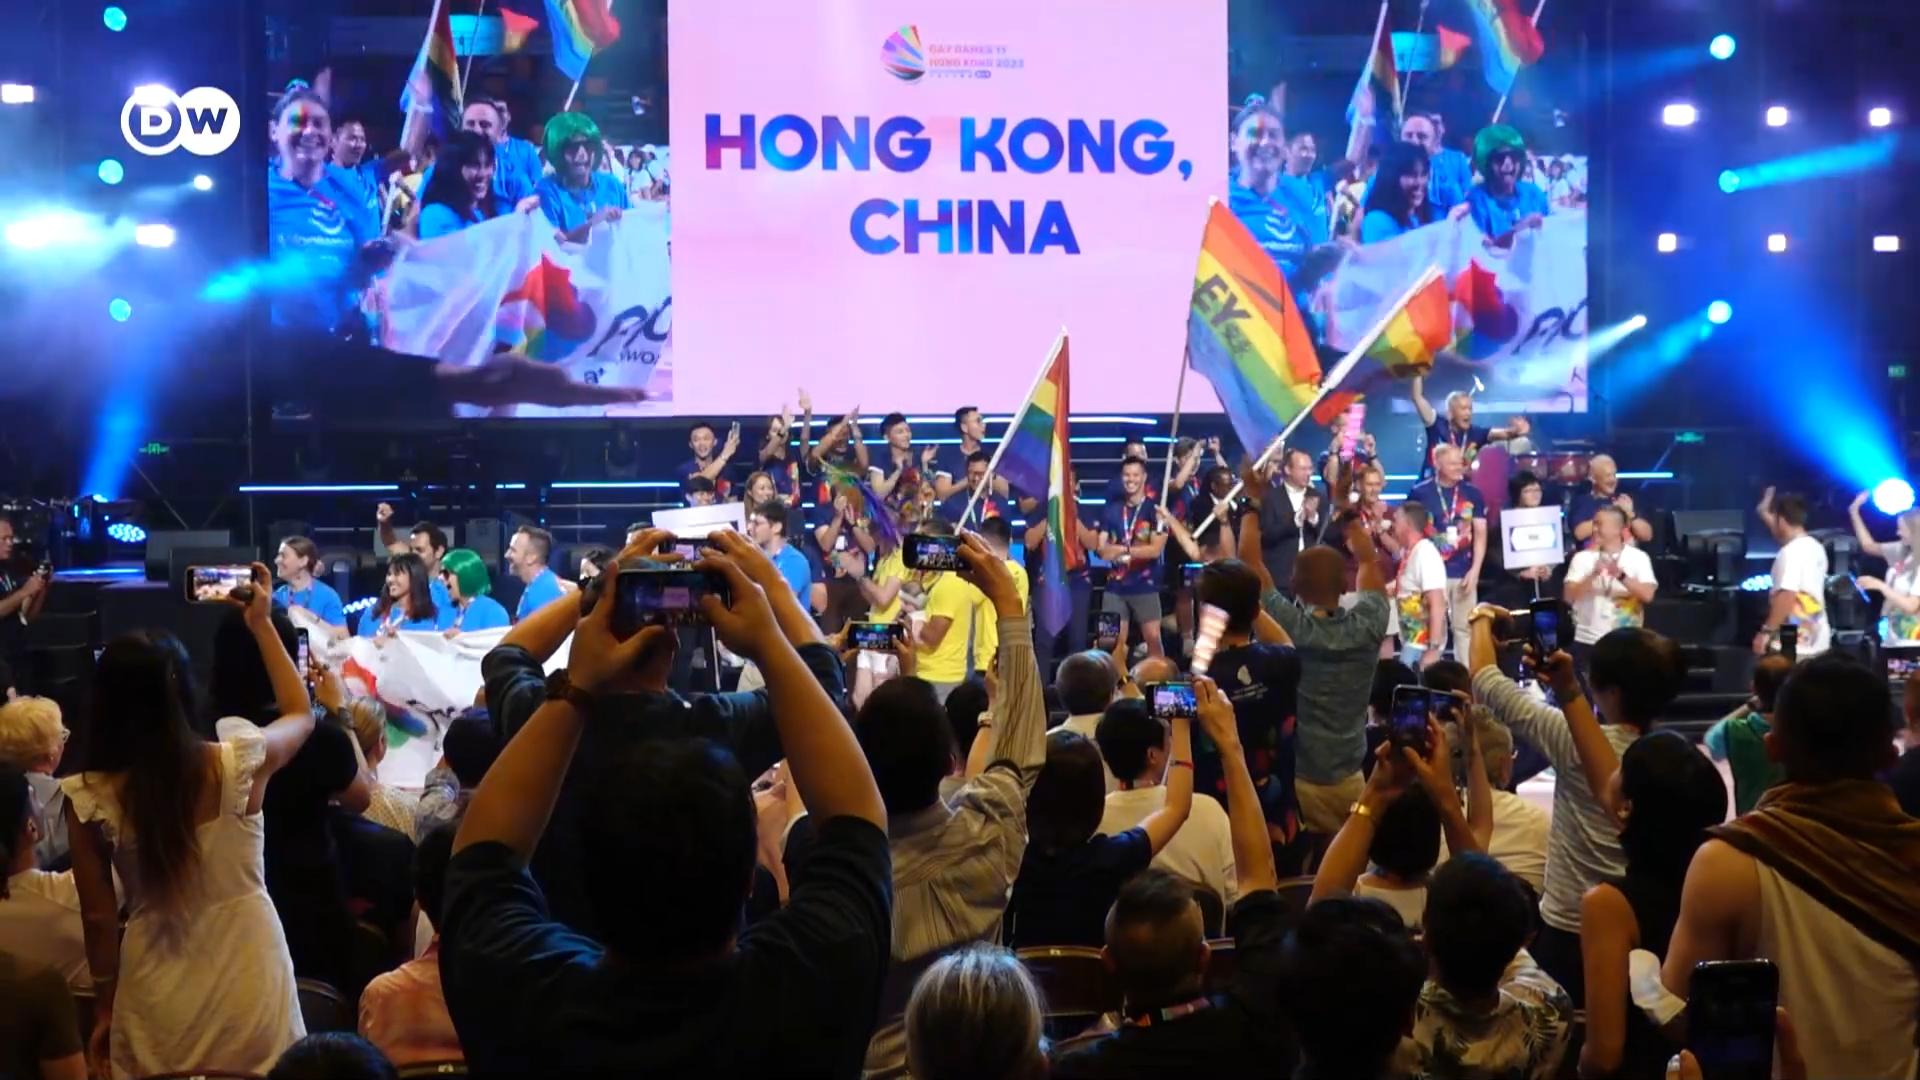 2023是香港同志平權運動歷史性的年份，由法庭、民間到媒體都經歷了巨變。終審裁決為同性關係制度化帶來關鍵突破，首次踏足亞洲的國際同樂運動會在香港登場，民調顯示同婚支持率創下新高。我們從一位平權案入稟人說起，香港同運正迎來什麼不一樣的挑戰？